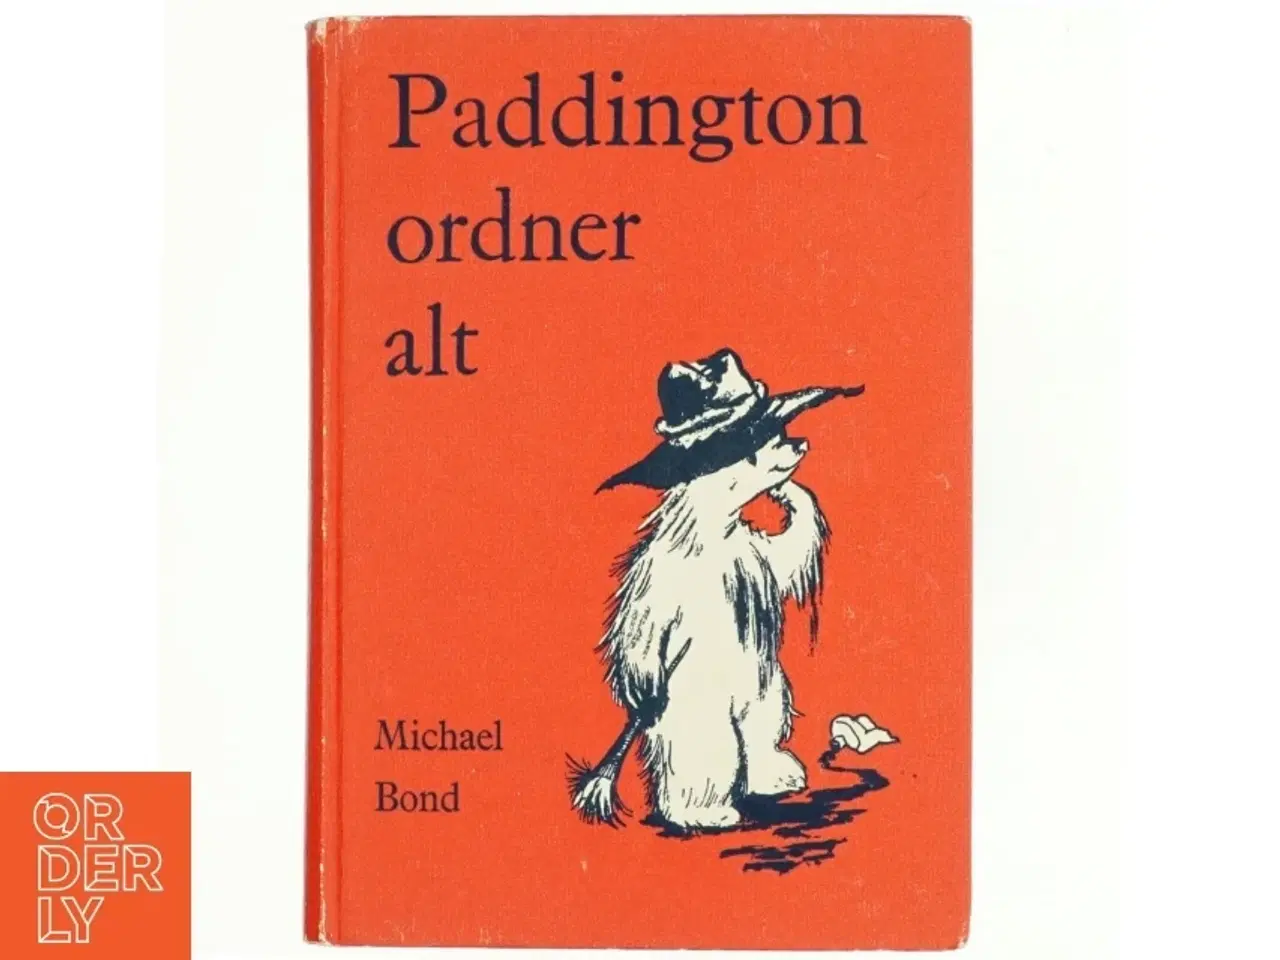 Billede 1 - Paddington ordner alt af Michael Bond (Bog) fra Det danske forlag